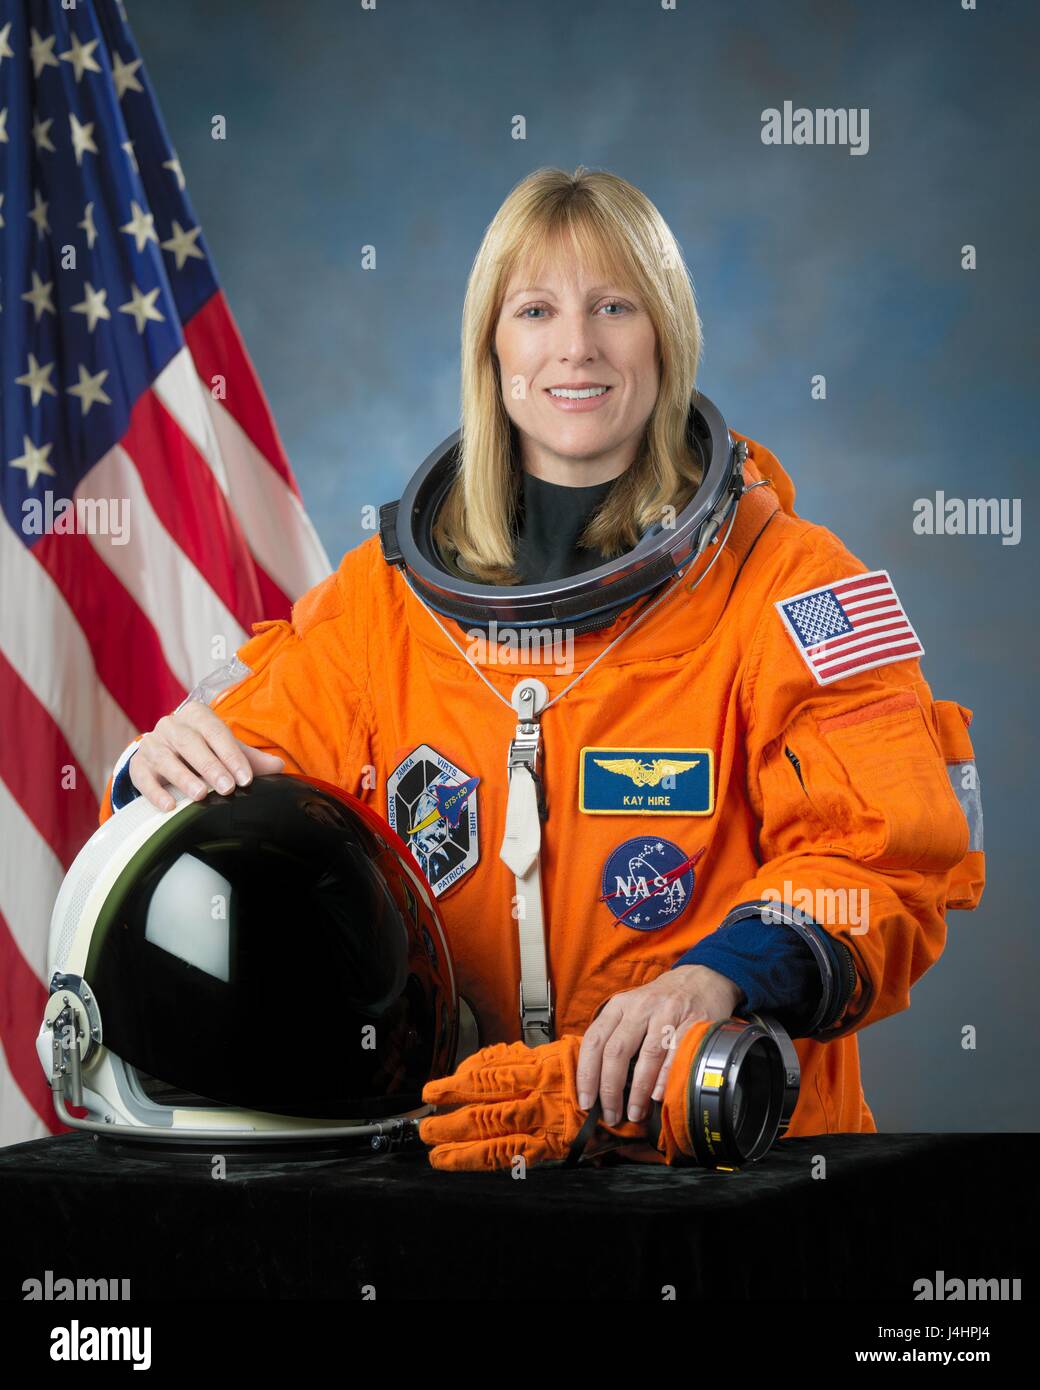 Ritratto ufficiale della NASA astronauta Kathryn "Kay" Noleggio indossando un arancio Sokol lancio e entrata spacesuit presso il Johnson Space Center Ottobre 26, 2009 a Houston, Texas. (Foto di Bill Stafford /NASA via Planetpix) Foto Stock